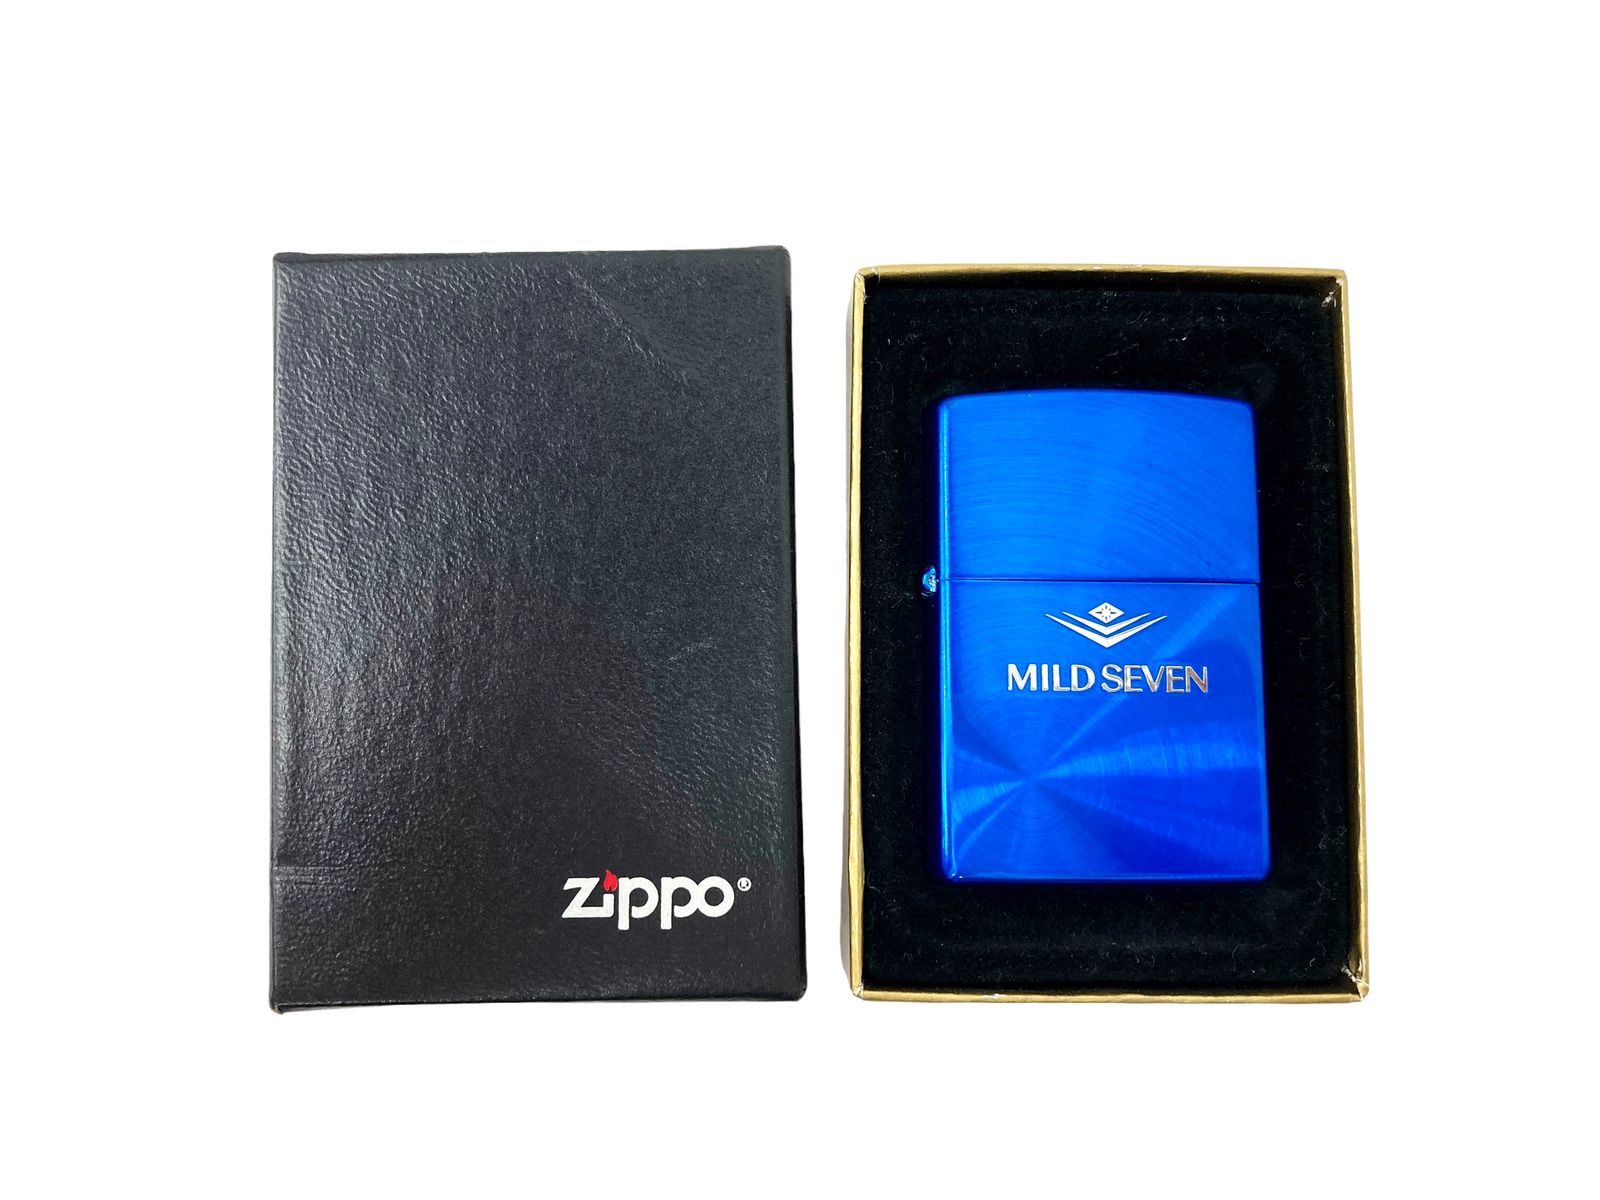 zippo (ジッポー) 2000年製 オイルライター MILD SEVEN マイルドセブン 